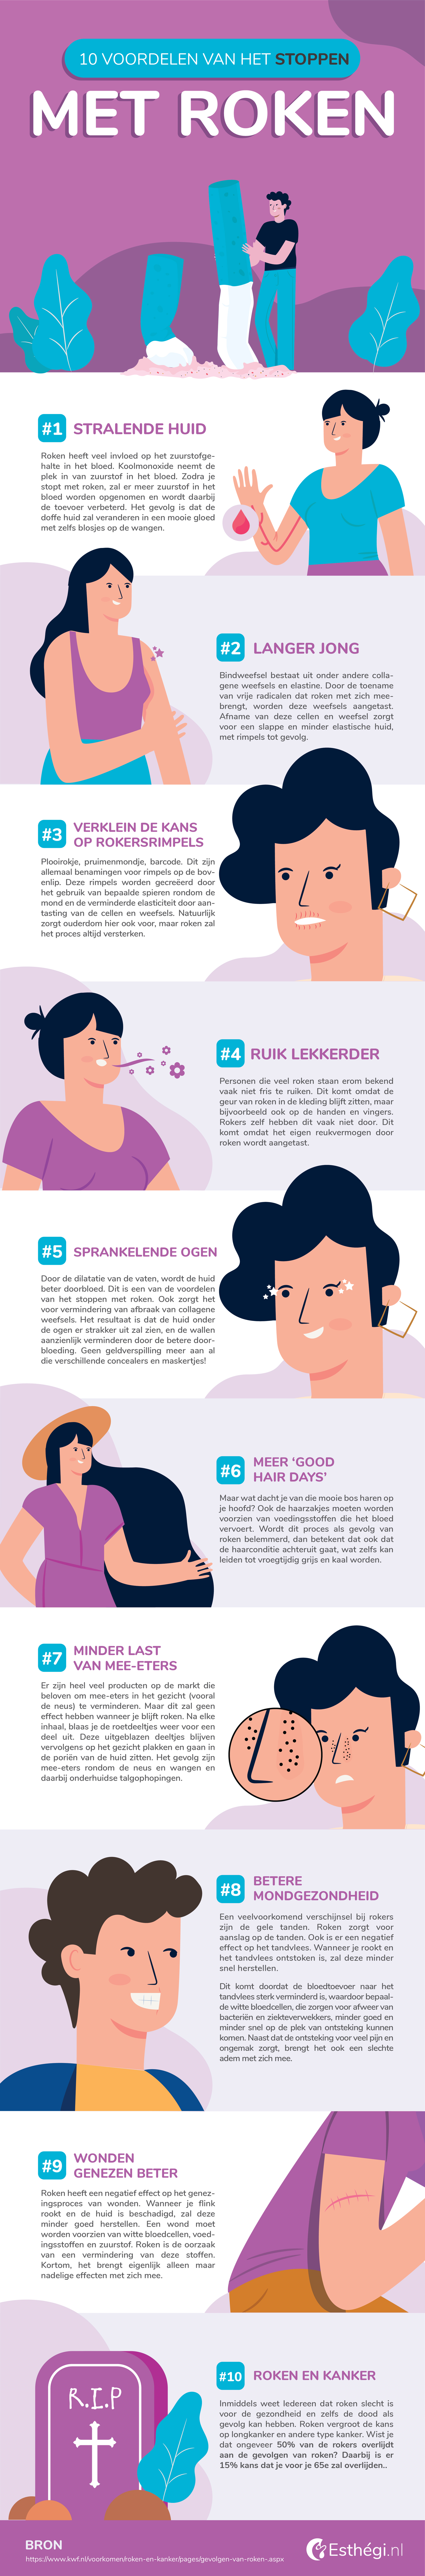 mate Graveren In hoeveelheid 10 Voordelen van het stoppen met roken (Infographic) - Esthegi.nl